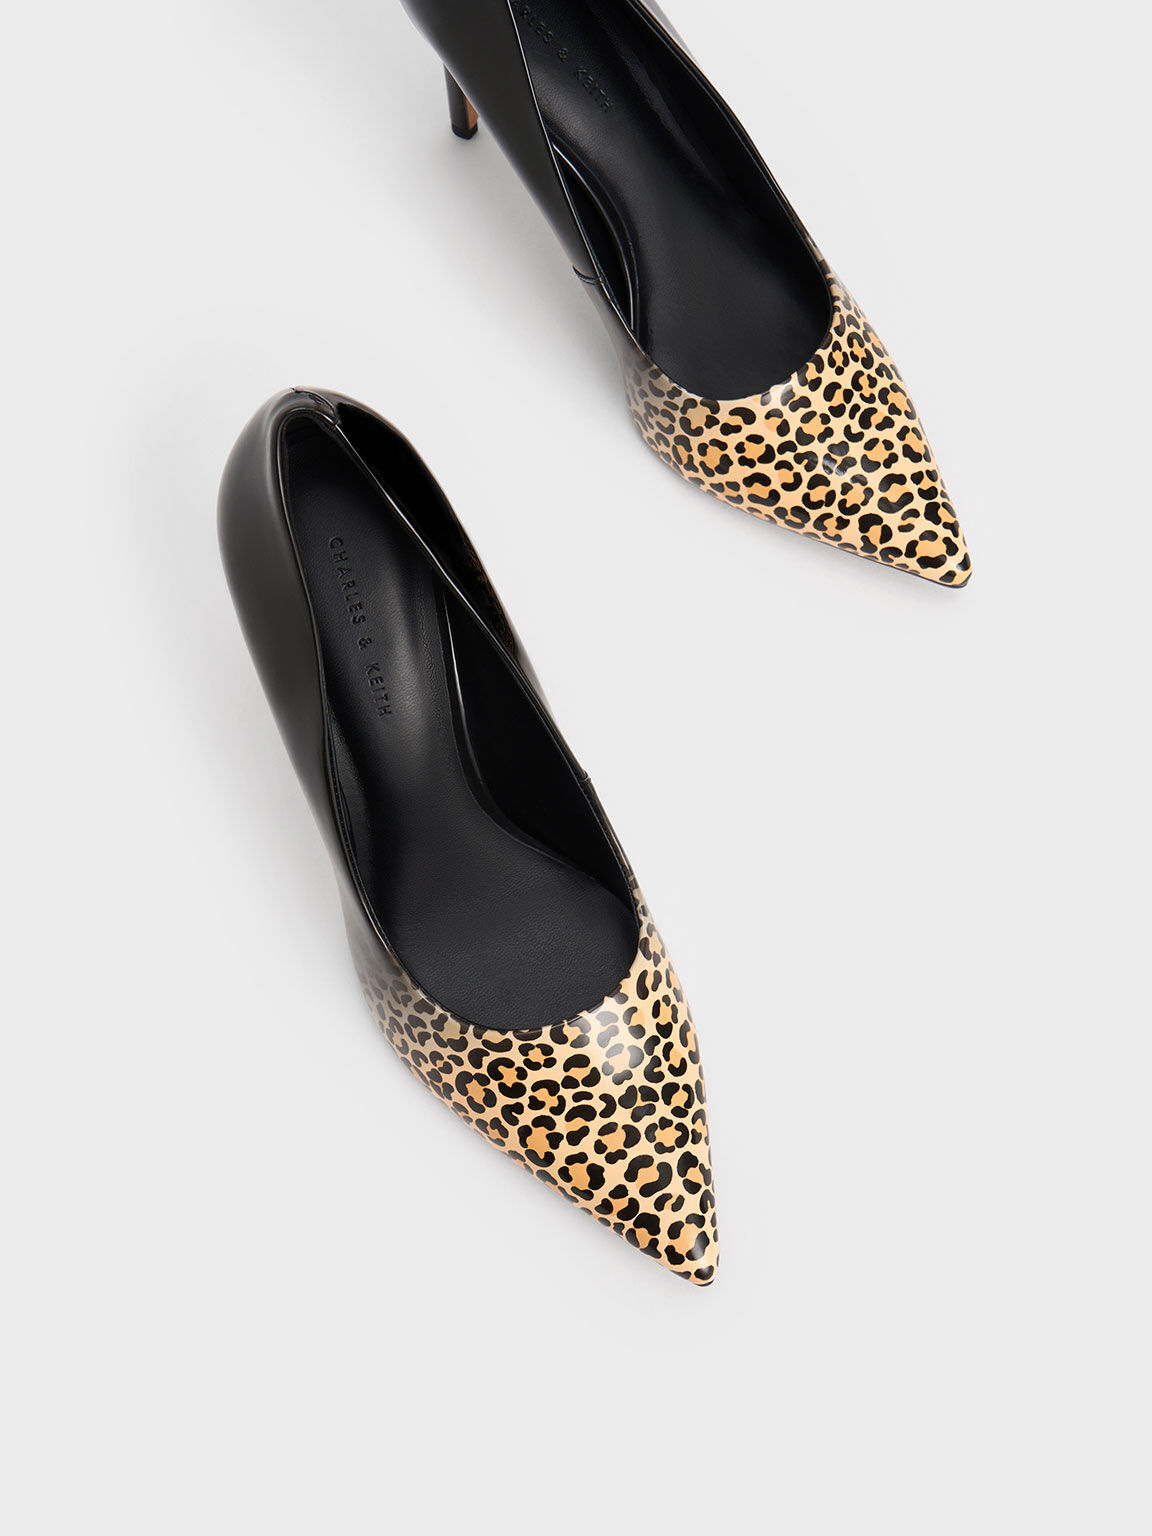 Sepatu Pumps Patent Leopard Print Stiletto Heel, Multi, hi-res